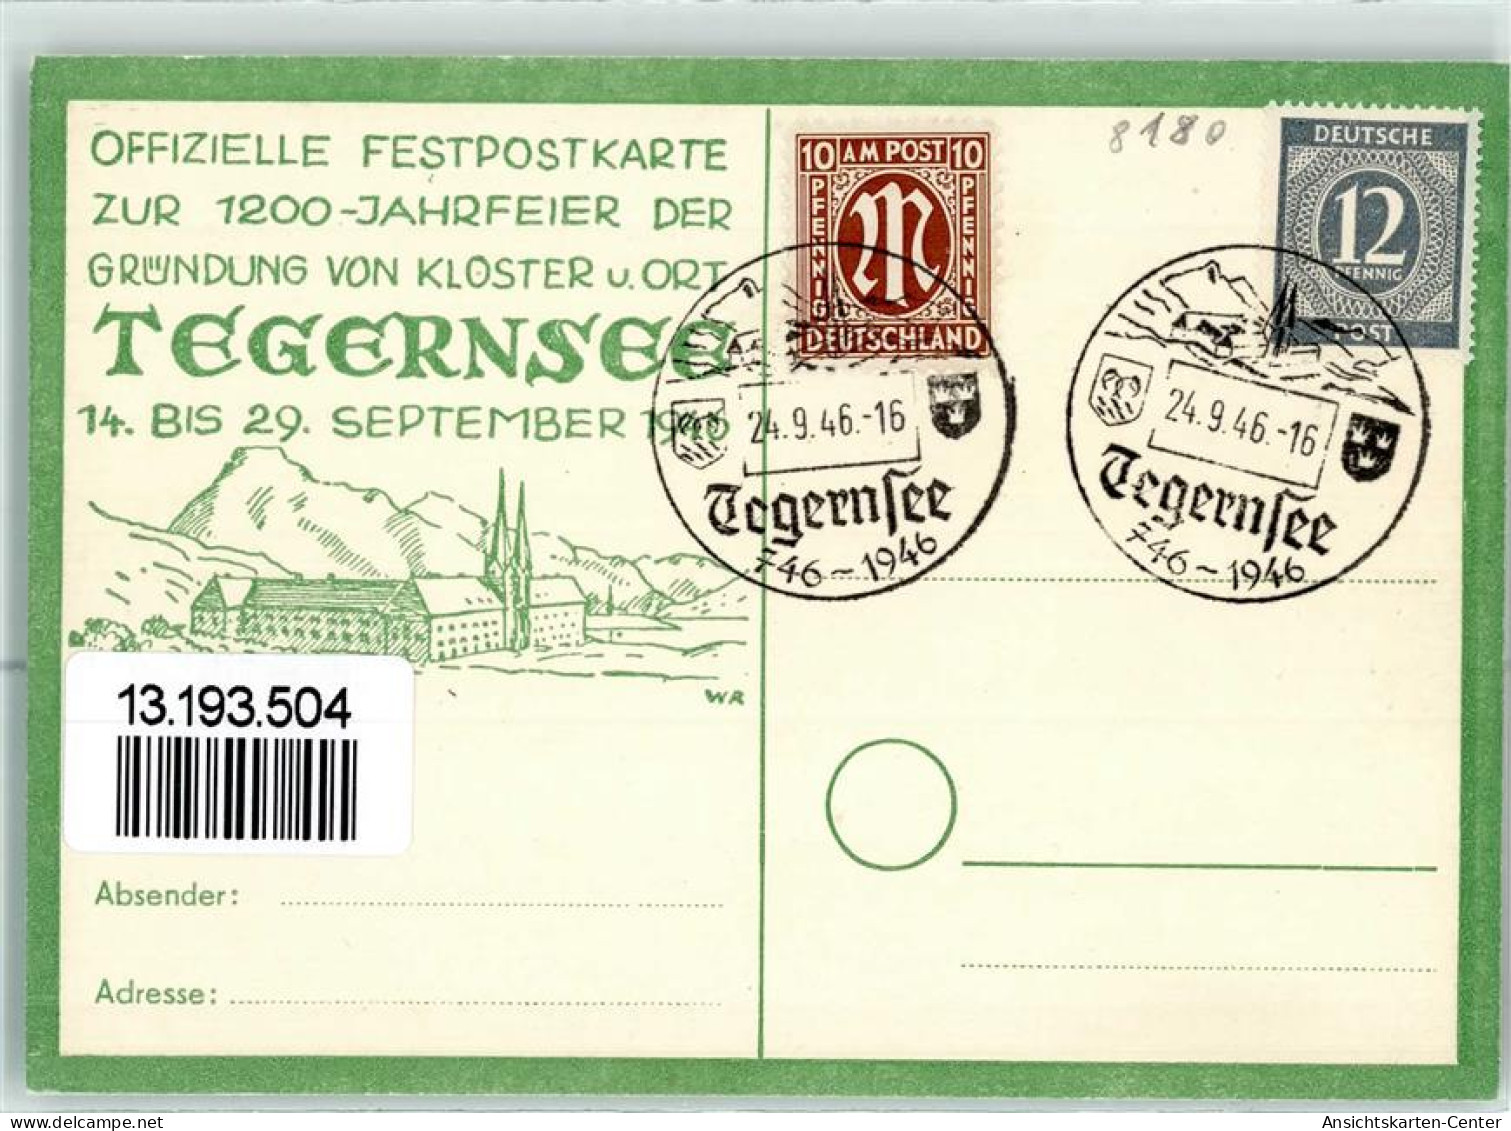 13193504 - Tegernsee - Tegernsee